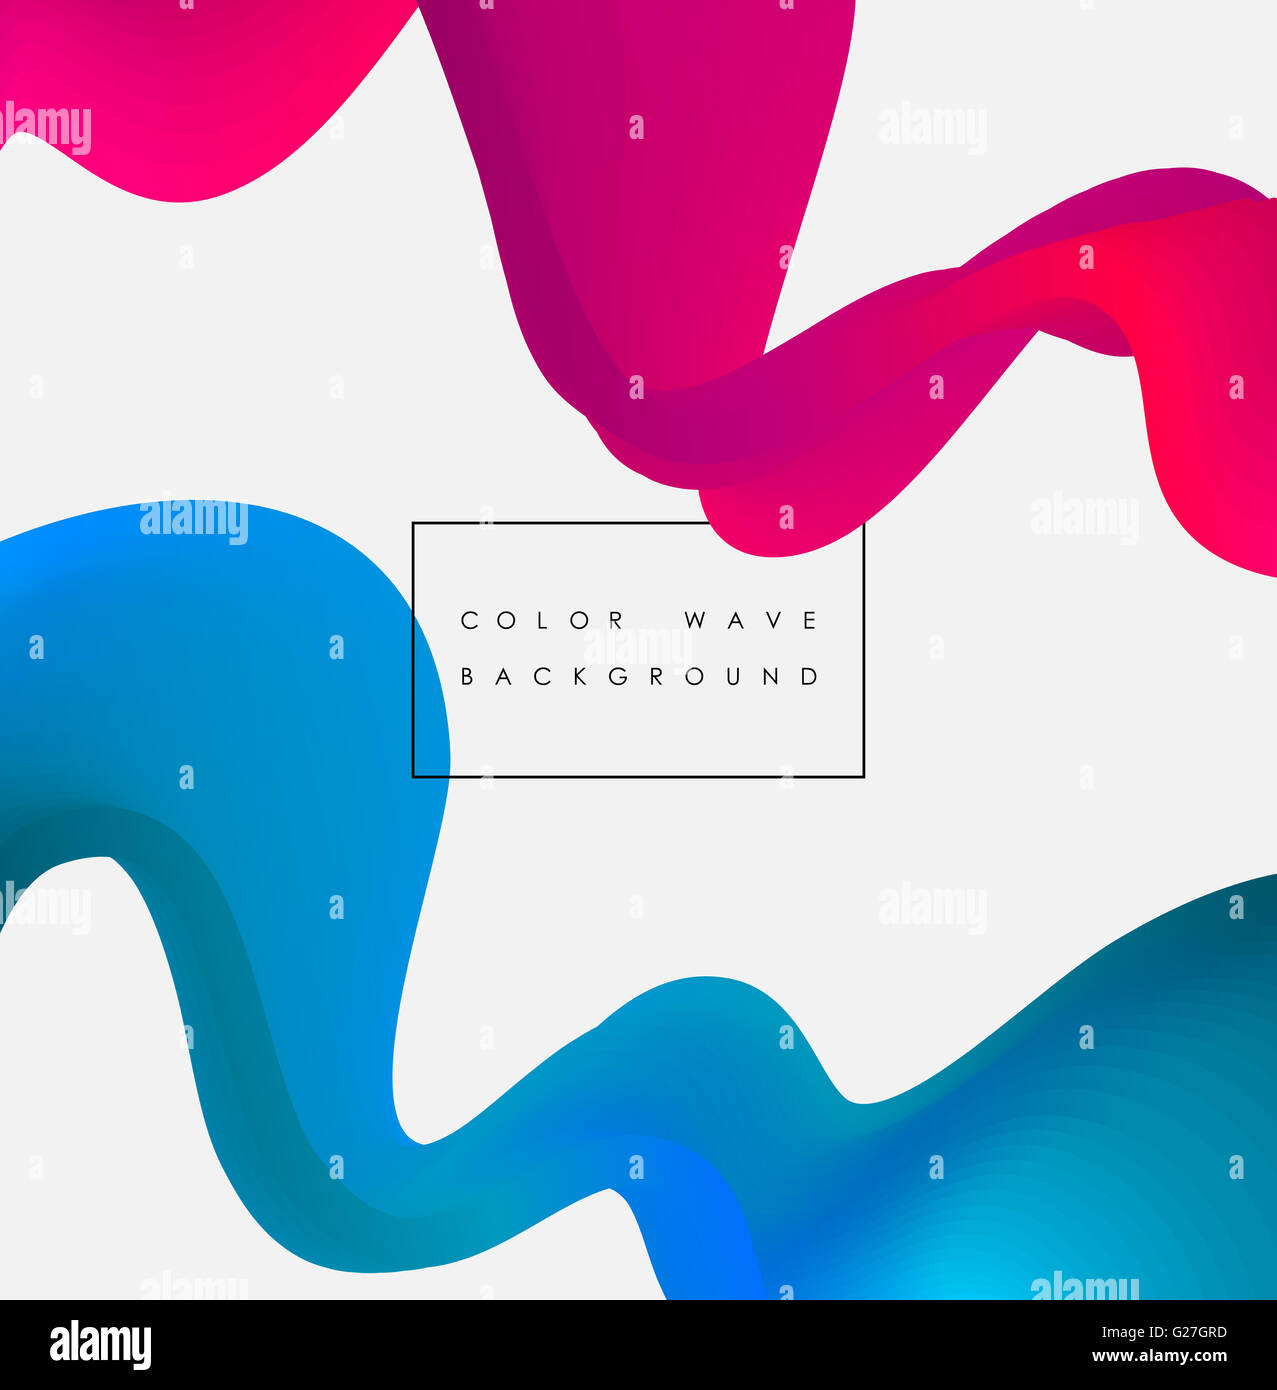 Abstrakte Farbe Wave Design-Element. Rosa und blaue gebogene Linien und Kreis. Stockfoto